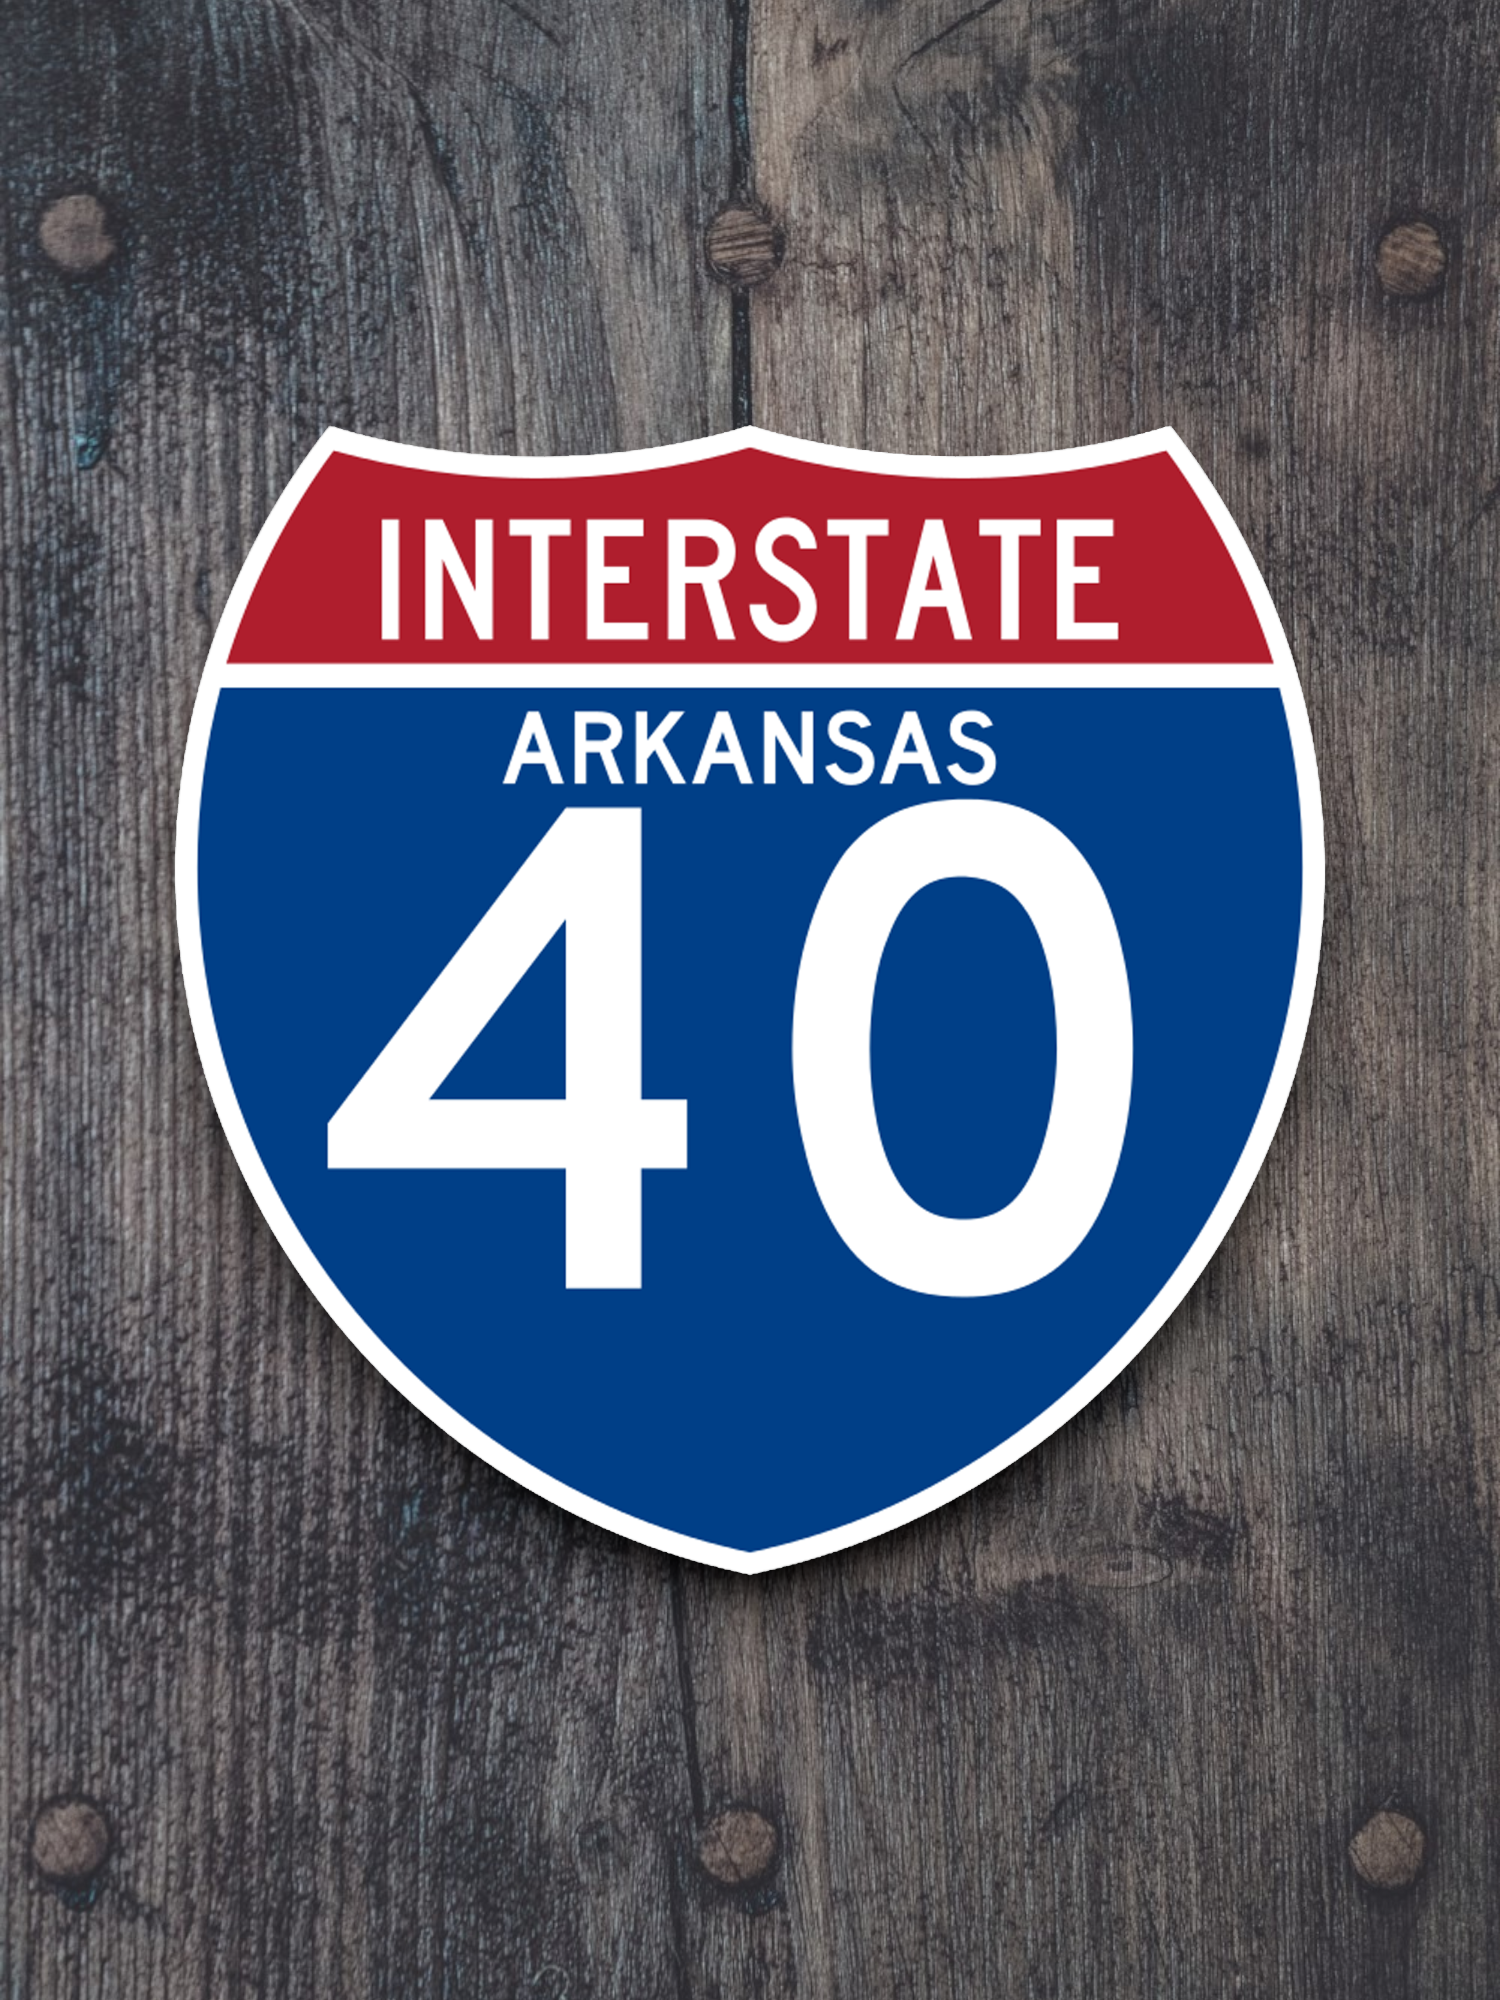 Interstate I-40 Arkansas - Road Sign Sticker